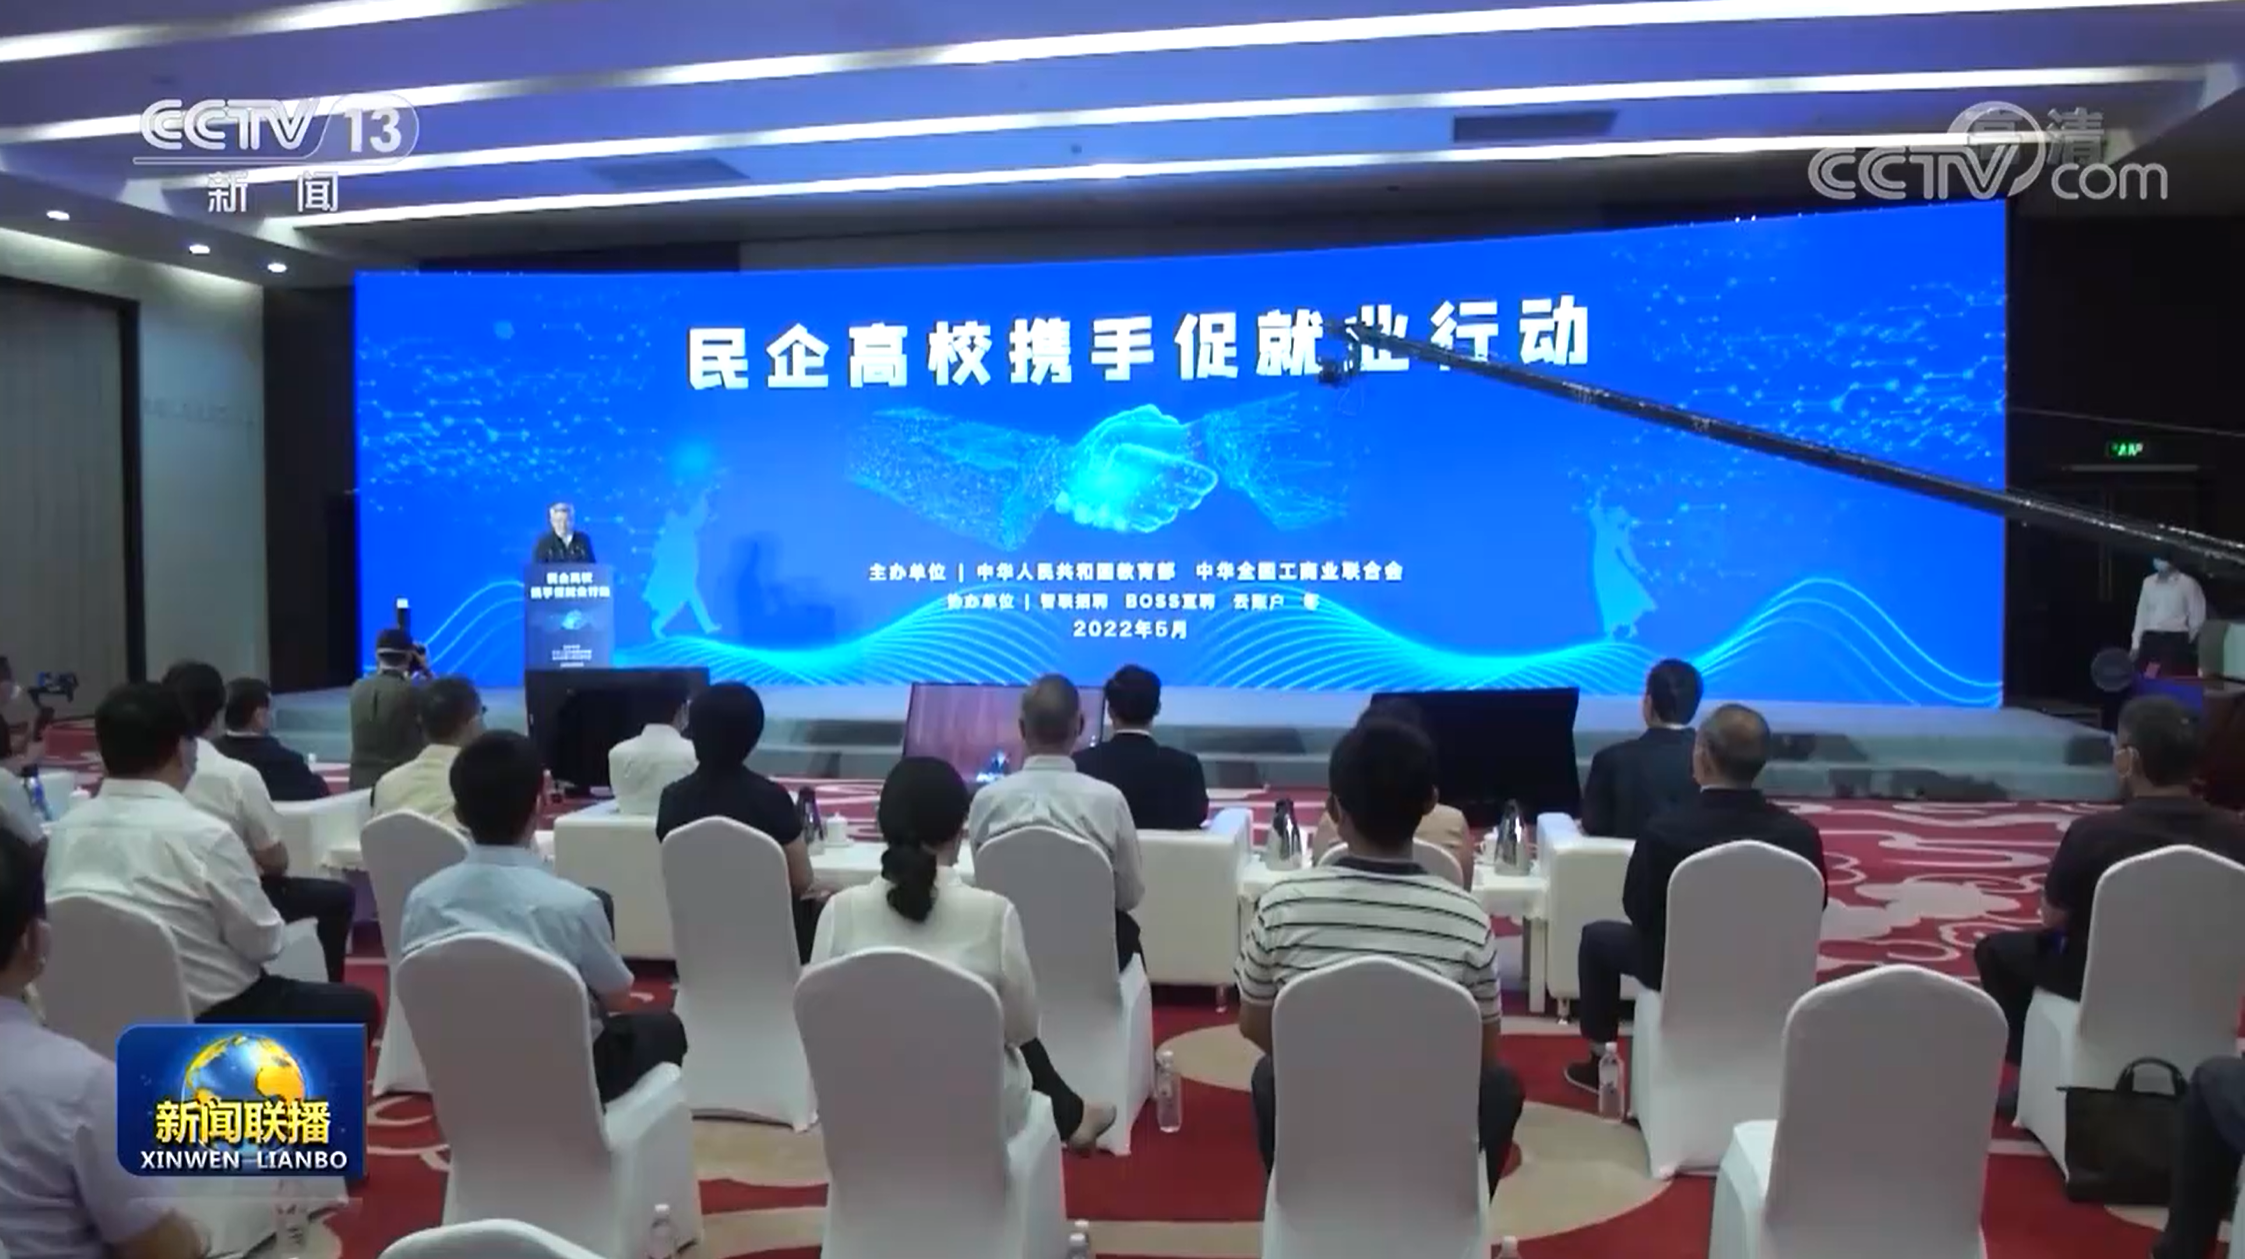 云账户董事长杨晖受邀参加世界智能大会数字经济与未来发展国际高峰论坛并作主旨演讲 161